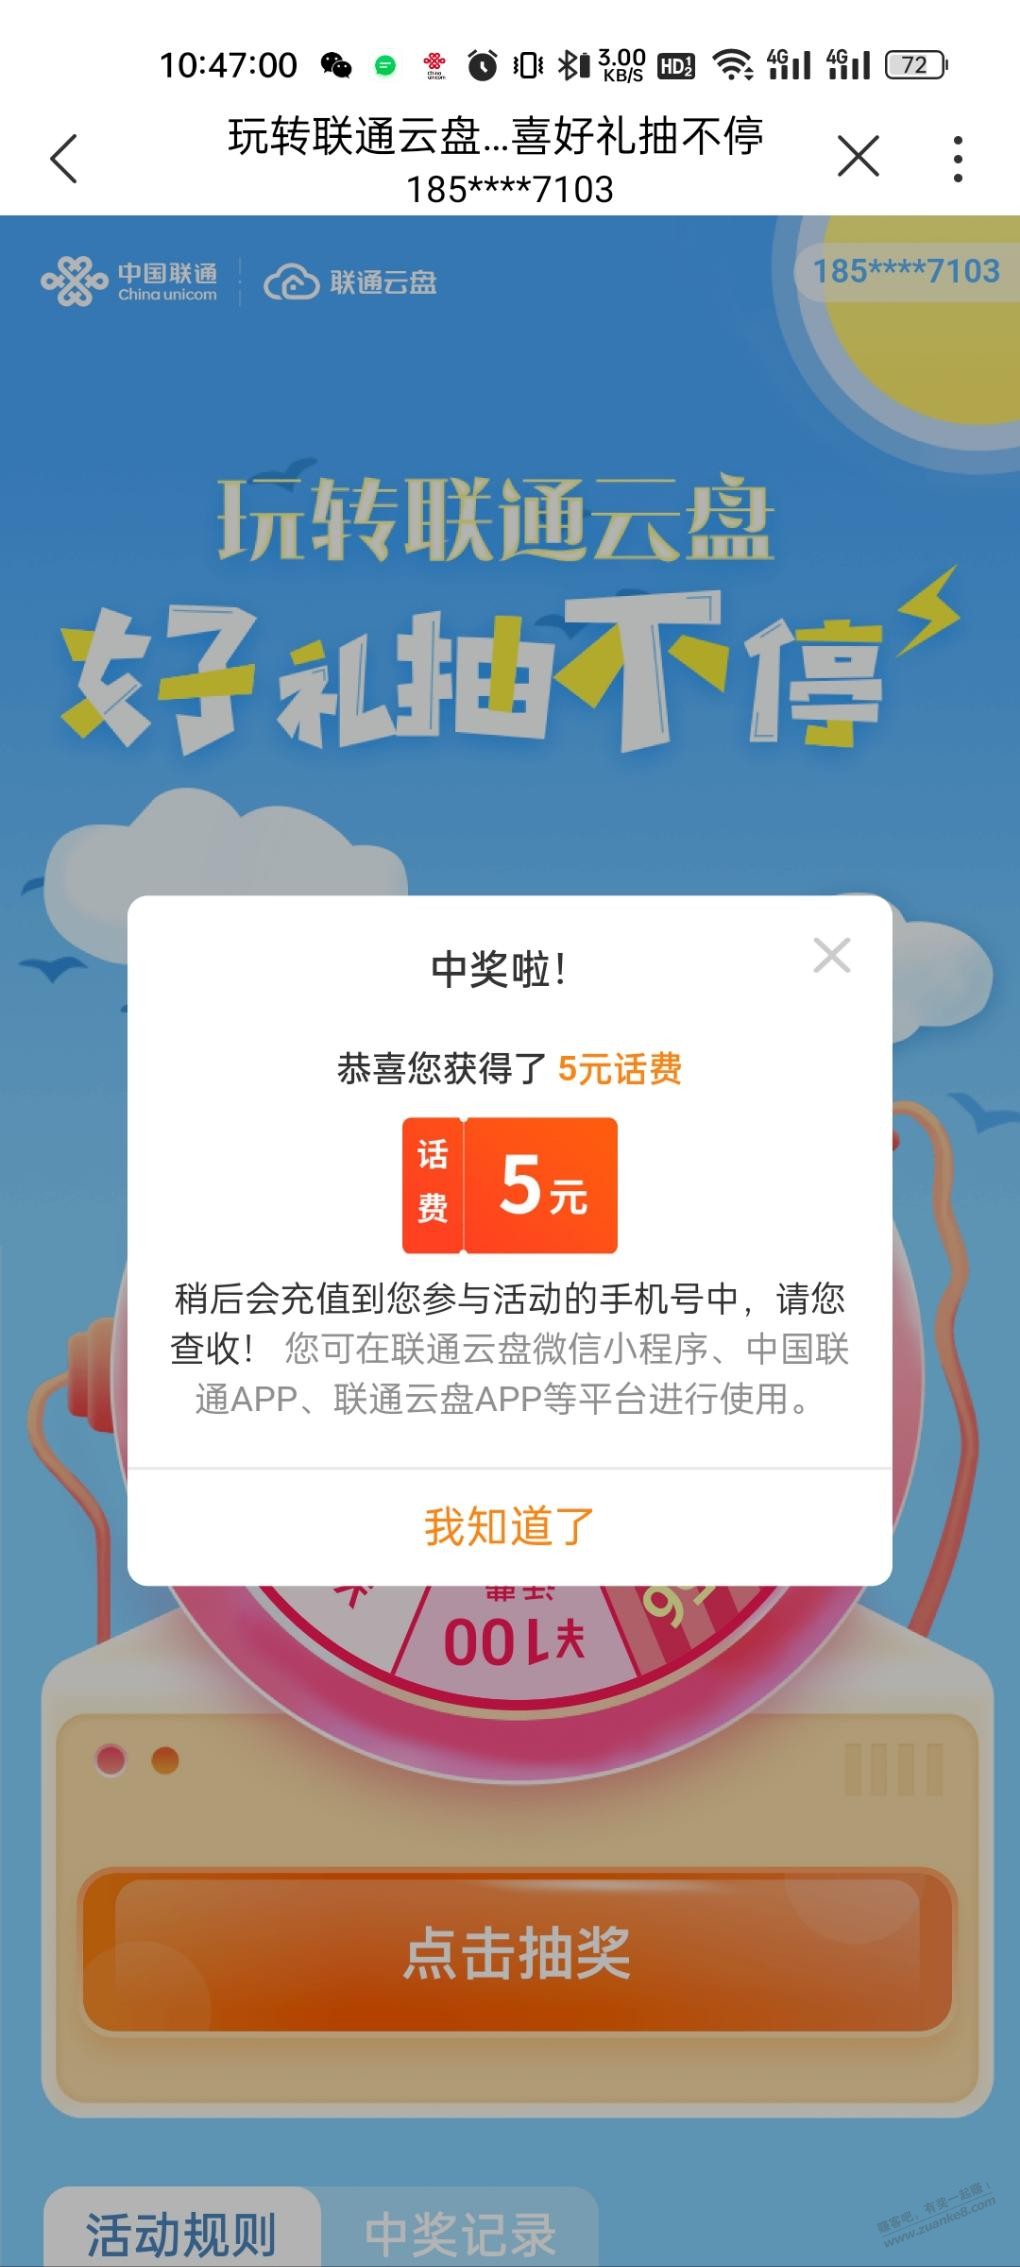 联通抽奖-app搜索-云盘-惠小助(52huixz.com)